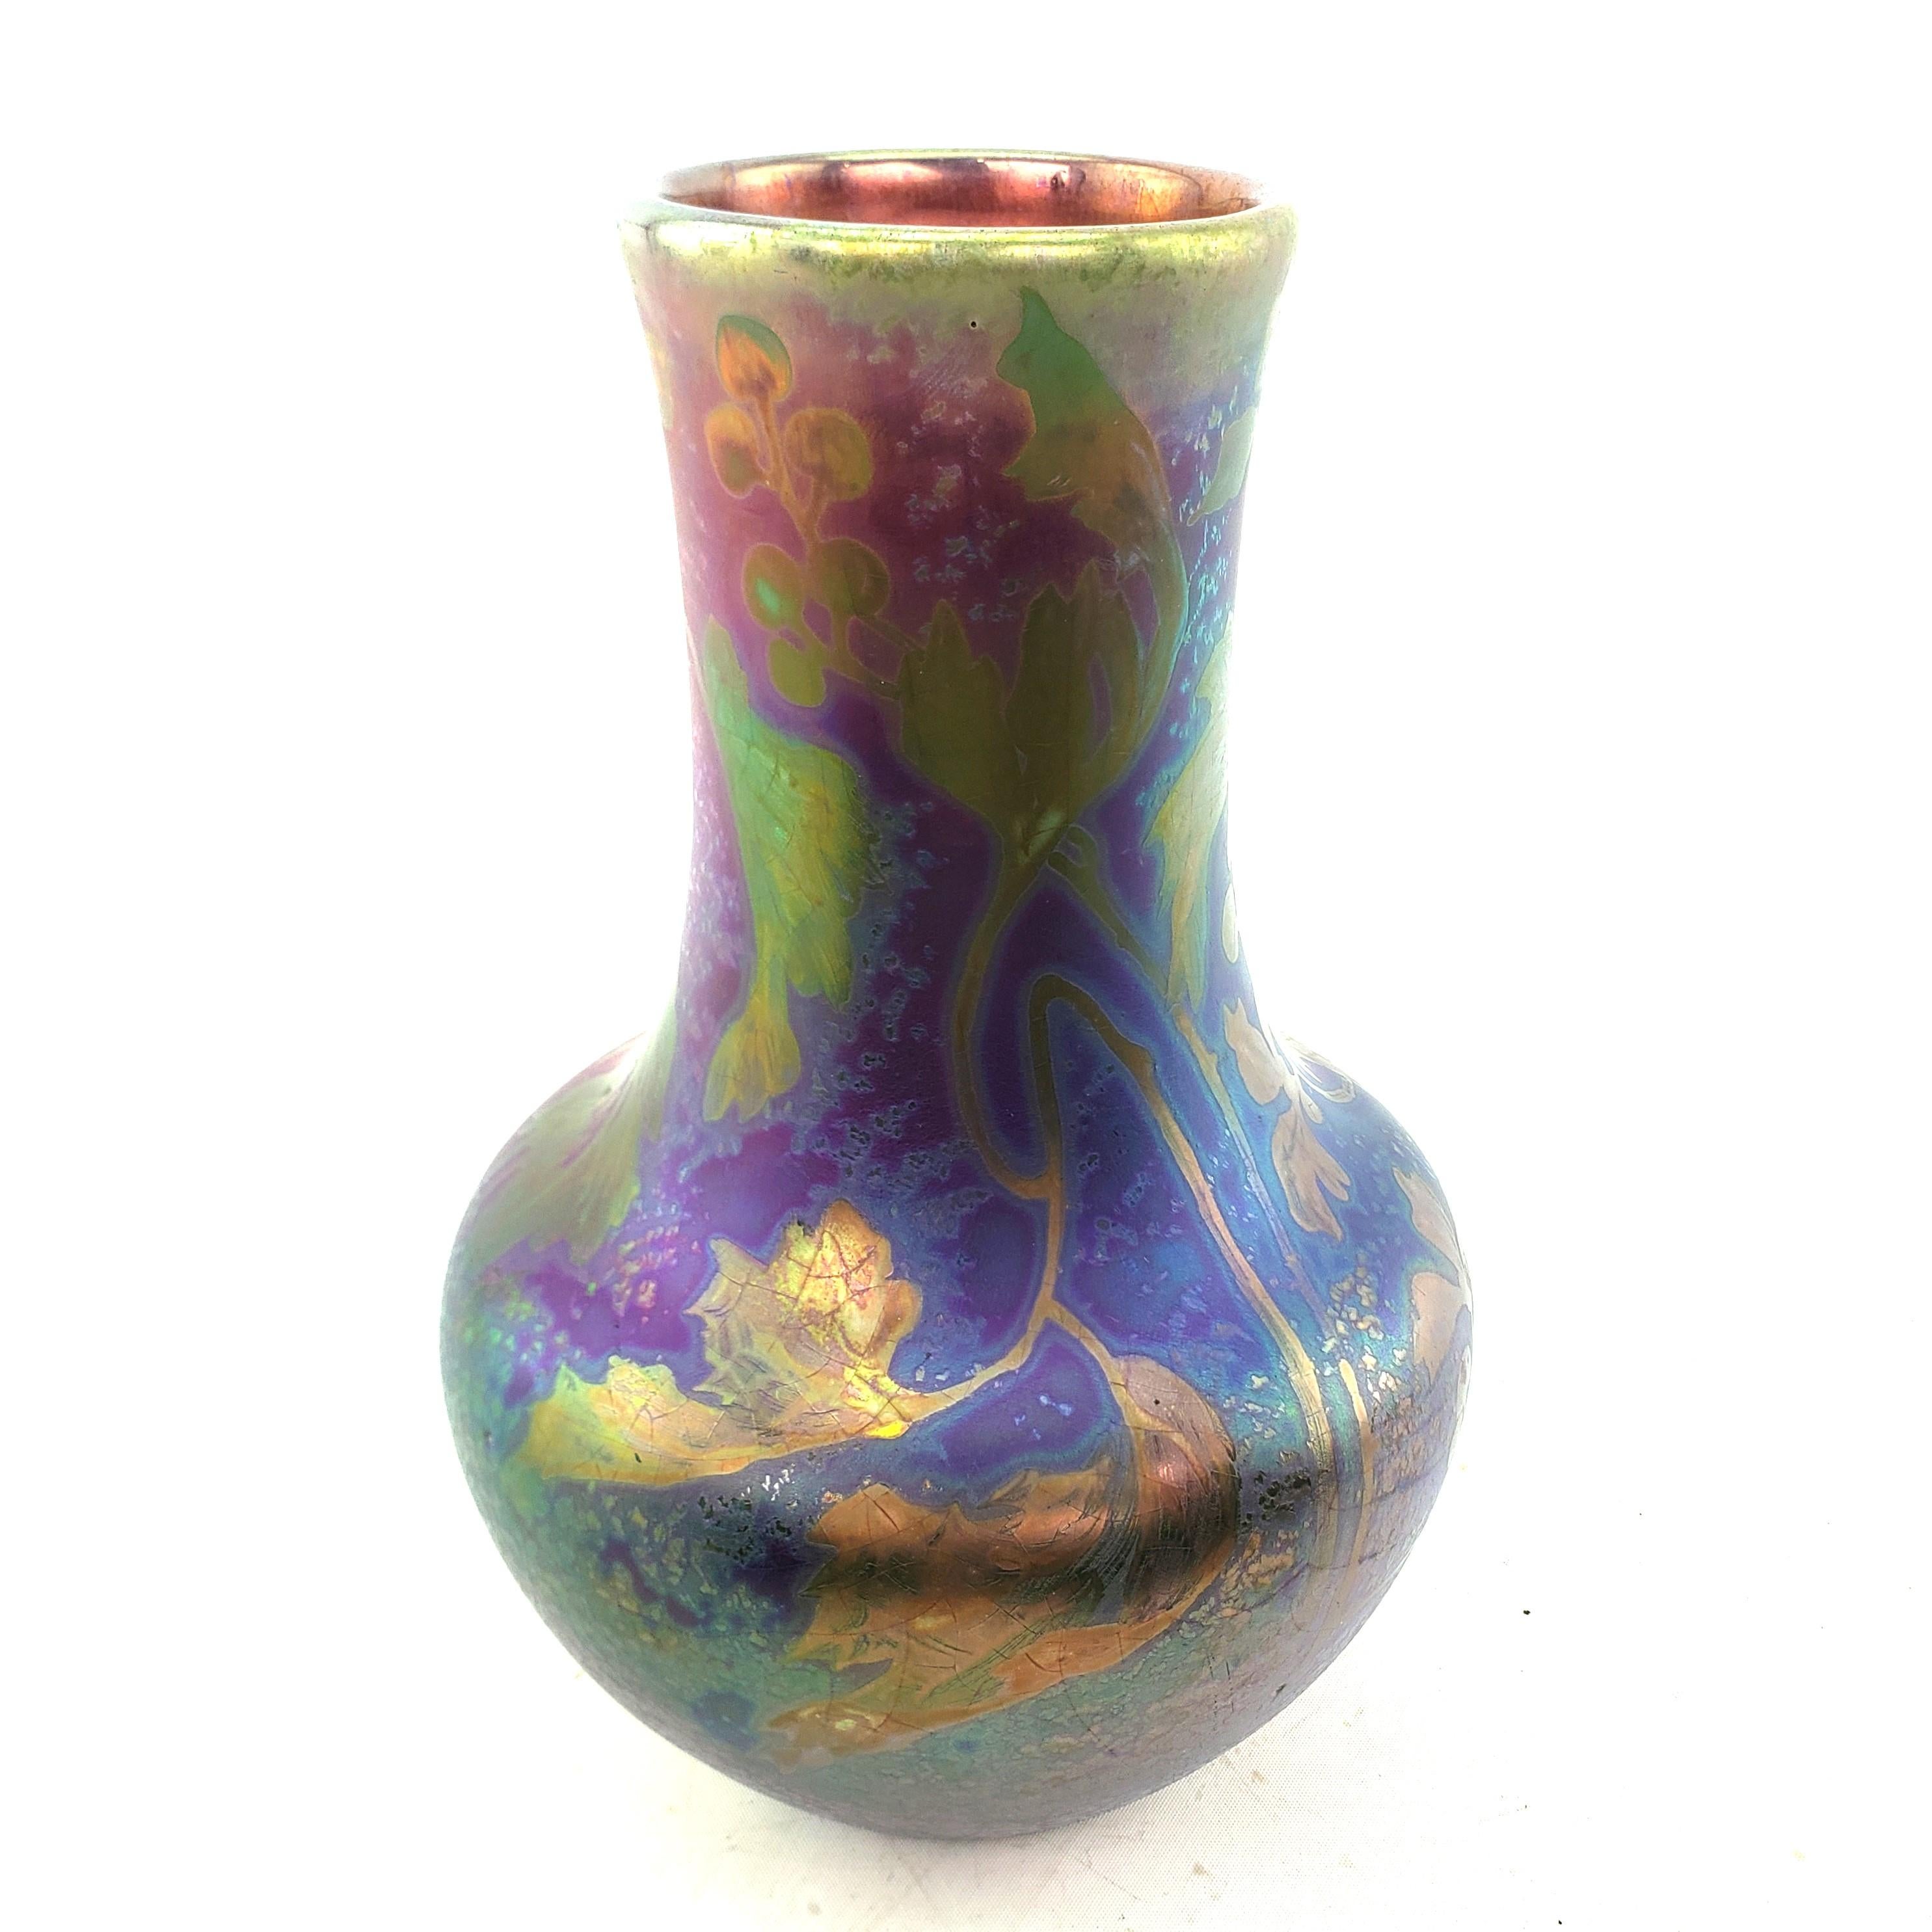 Ce vase a été fabriqué par la célèbre usine Weller Pottery des États-Unis vers 1910 dans le style Art nouveau. Le vase est fait d'un bleu de cobalt, d'un vert et d'un violet très irridescents avec une décoration florale stylisée et une finition